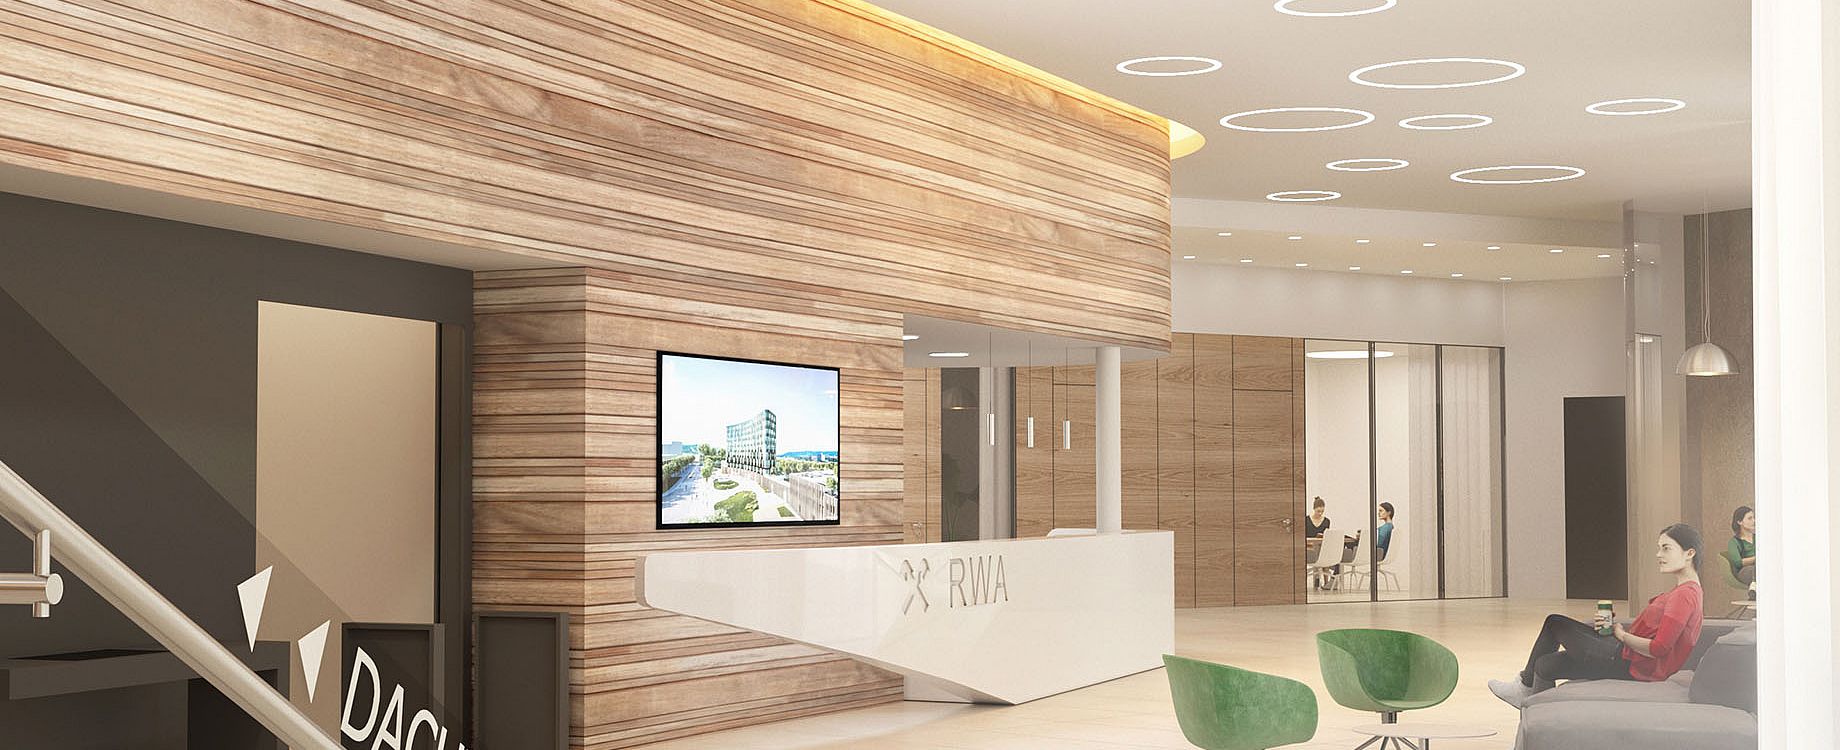 Ein Rendering der Lobby im Erdgeschoss des neuen Bürogebäudes. Symbolbild © Maurer & Partner Architekten